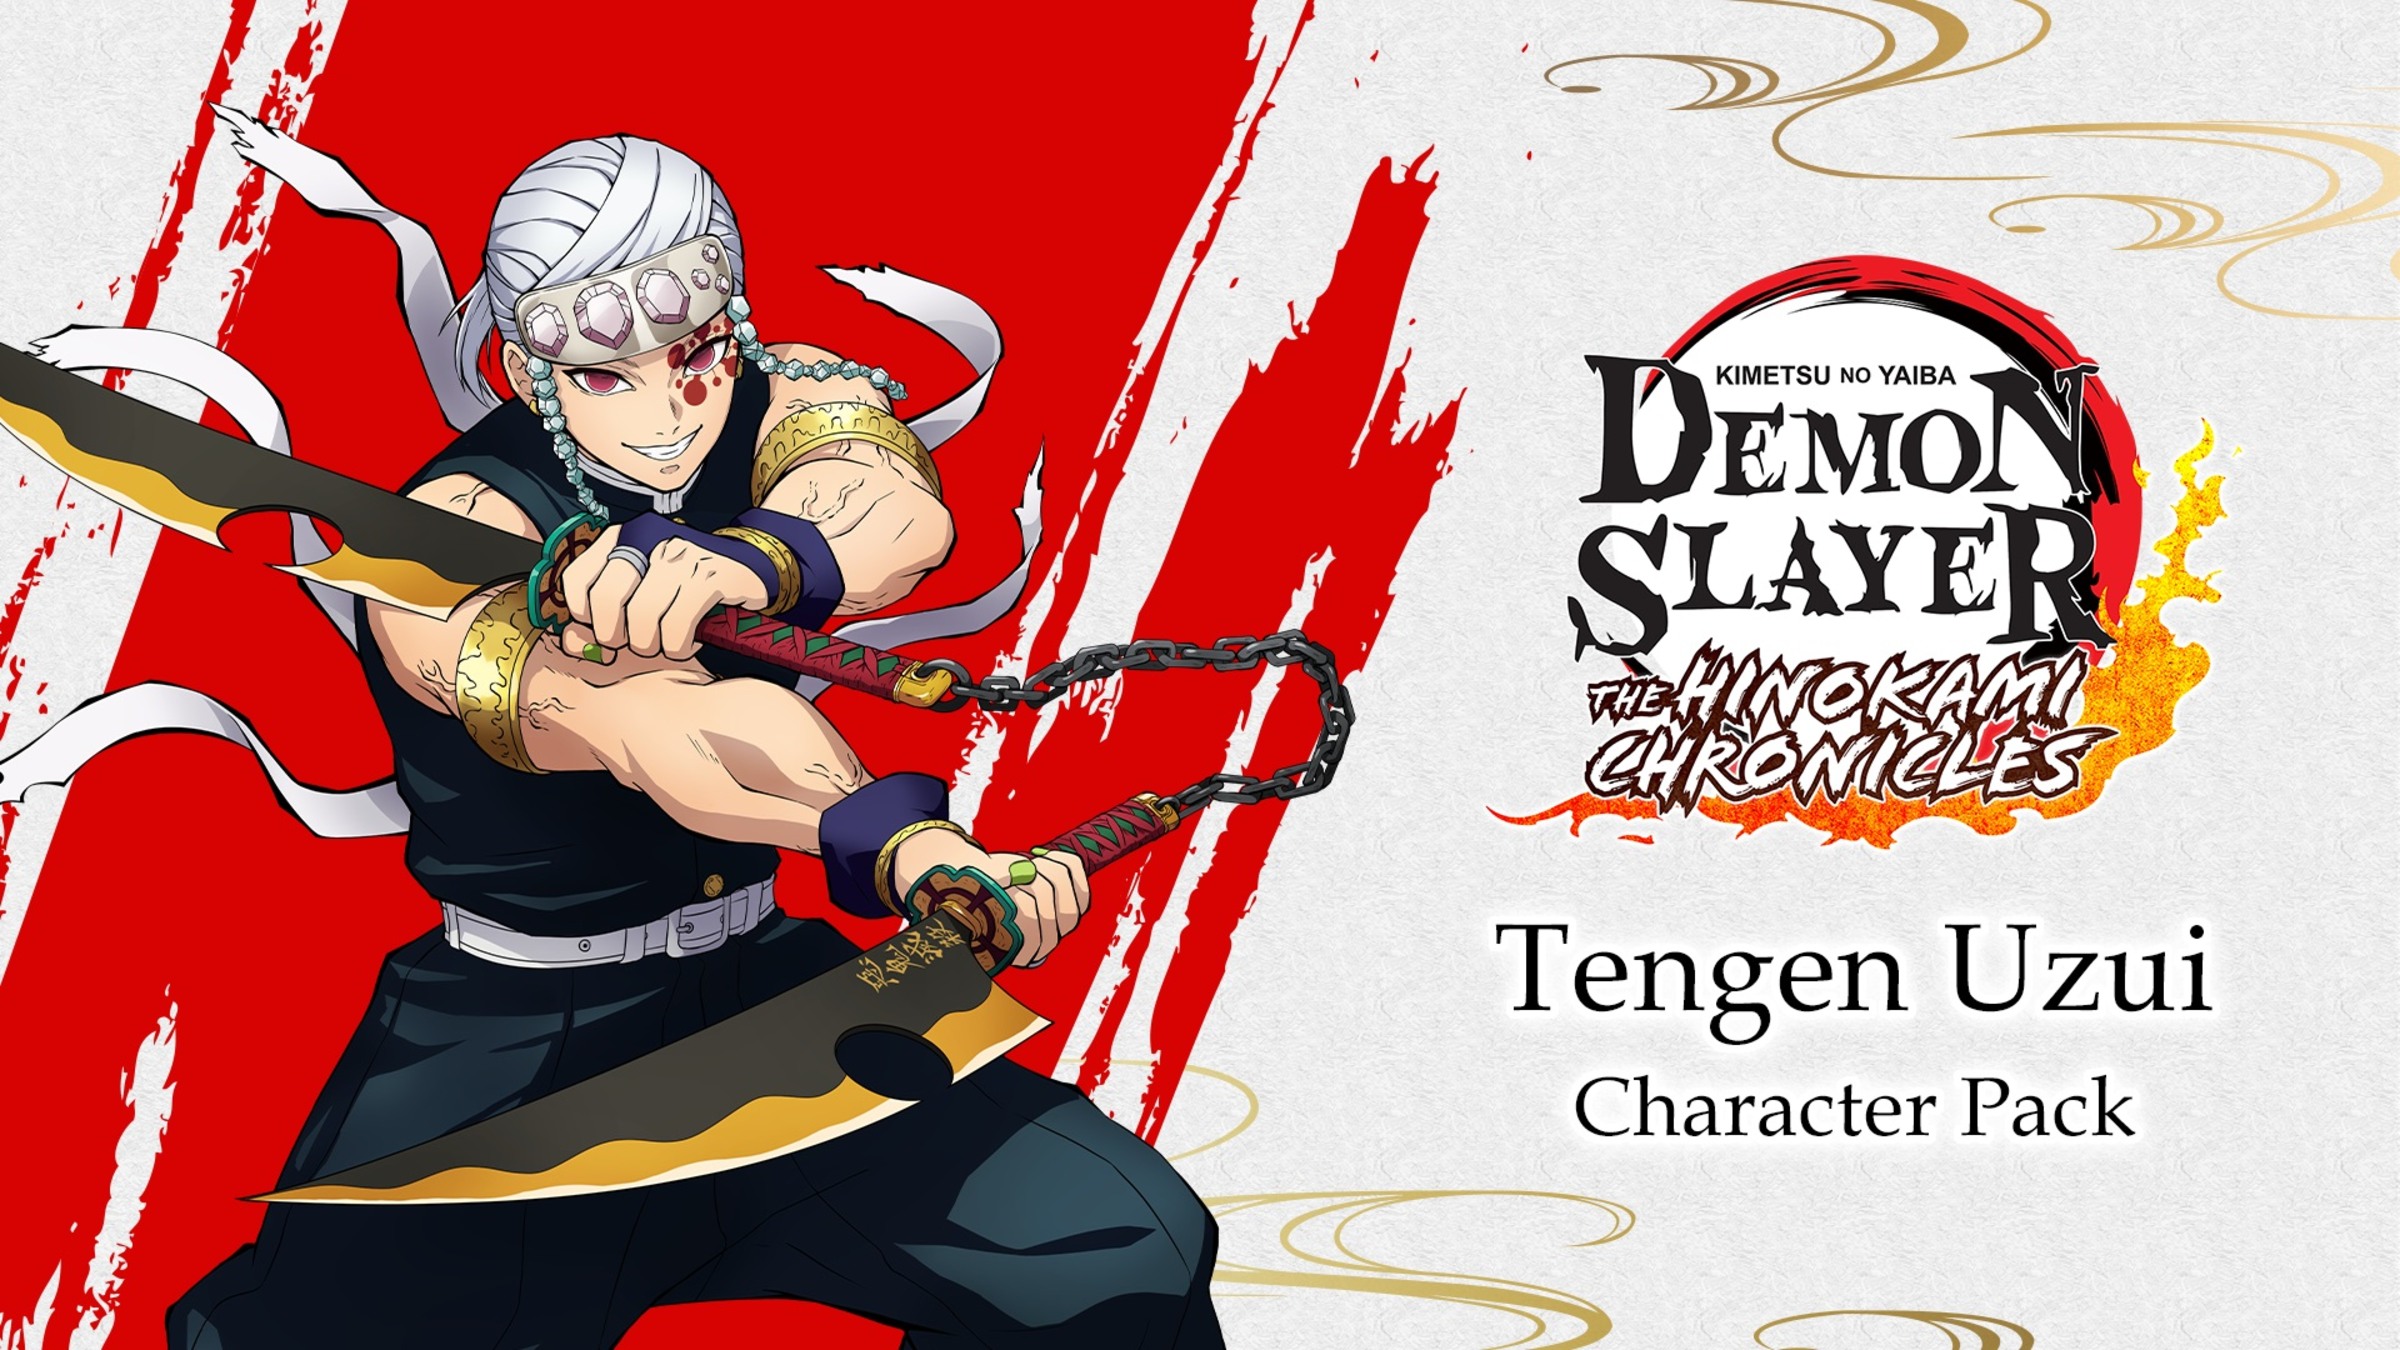 Tengen Uzui - Demon Slayer character analysis